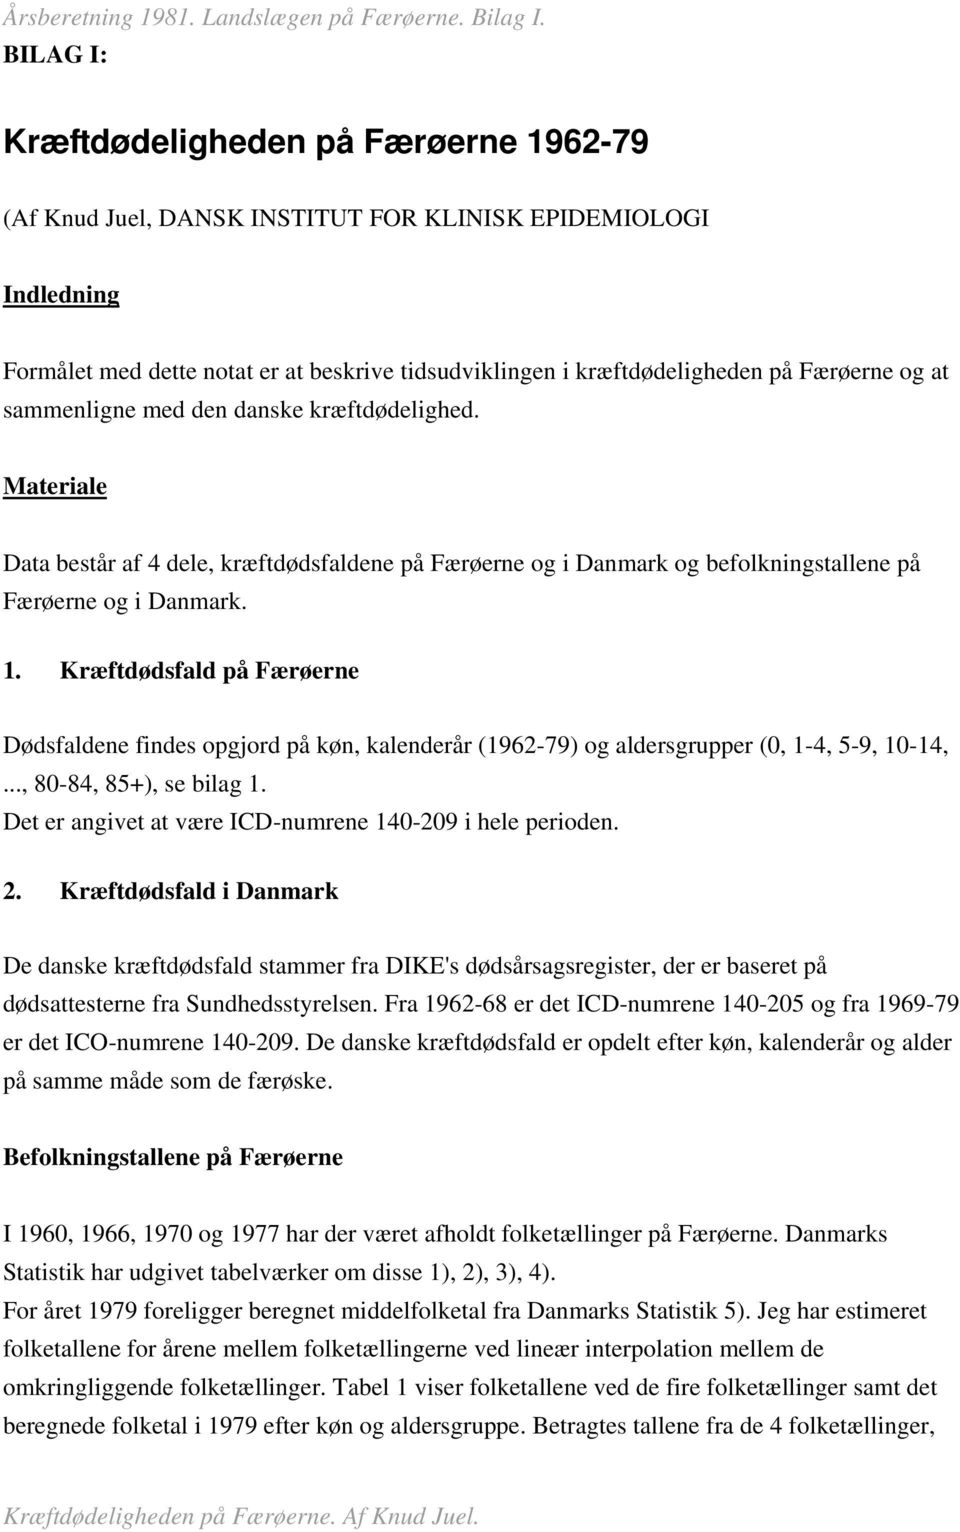 Kræftdødsfald på Færøerne Dødsfaldene findes opgjord på køn, kalenderår (1962-79) og aldersgrupper (0, 1-4, 5-9, 10-14,..., 80-84, 85+), se bilag 1.